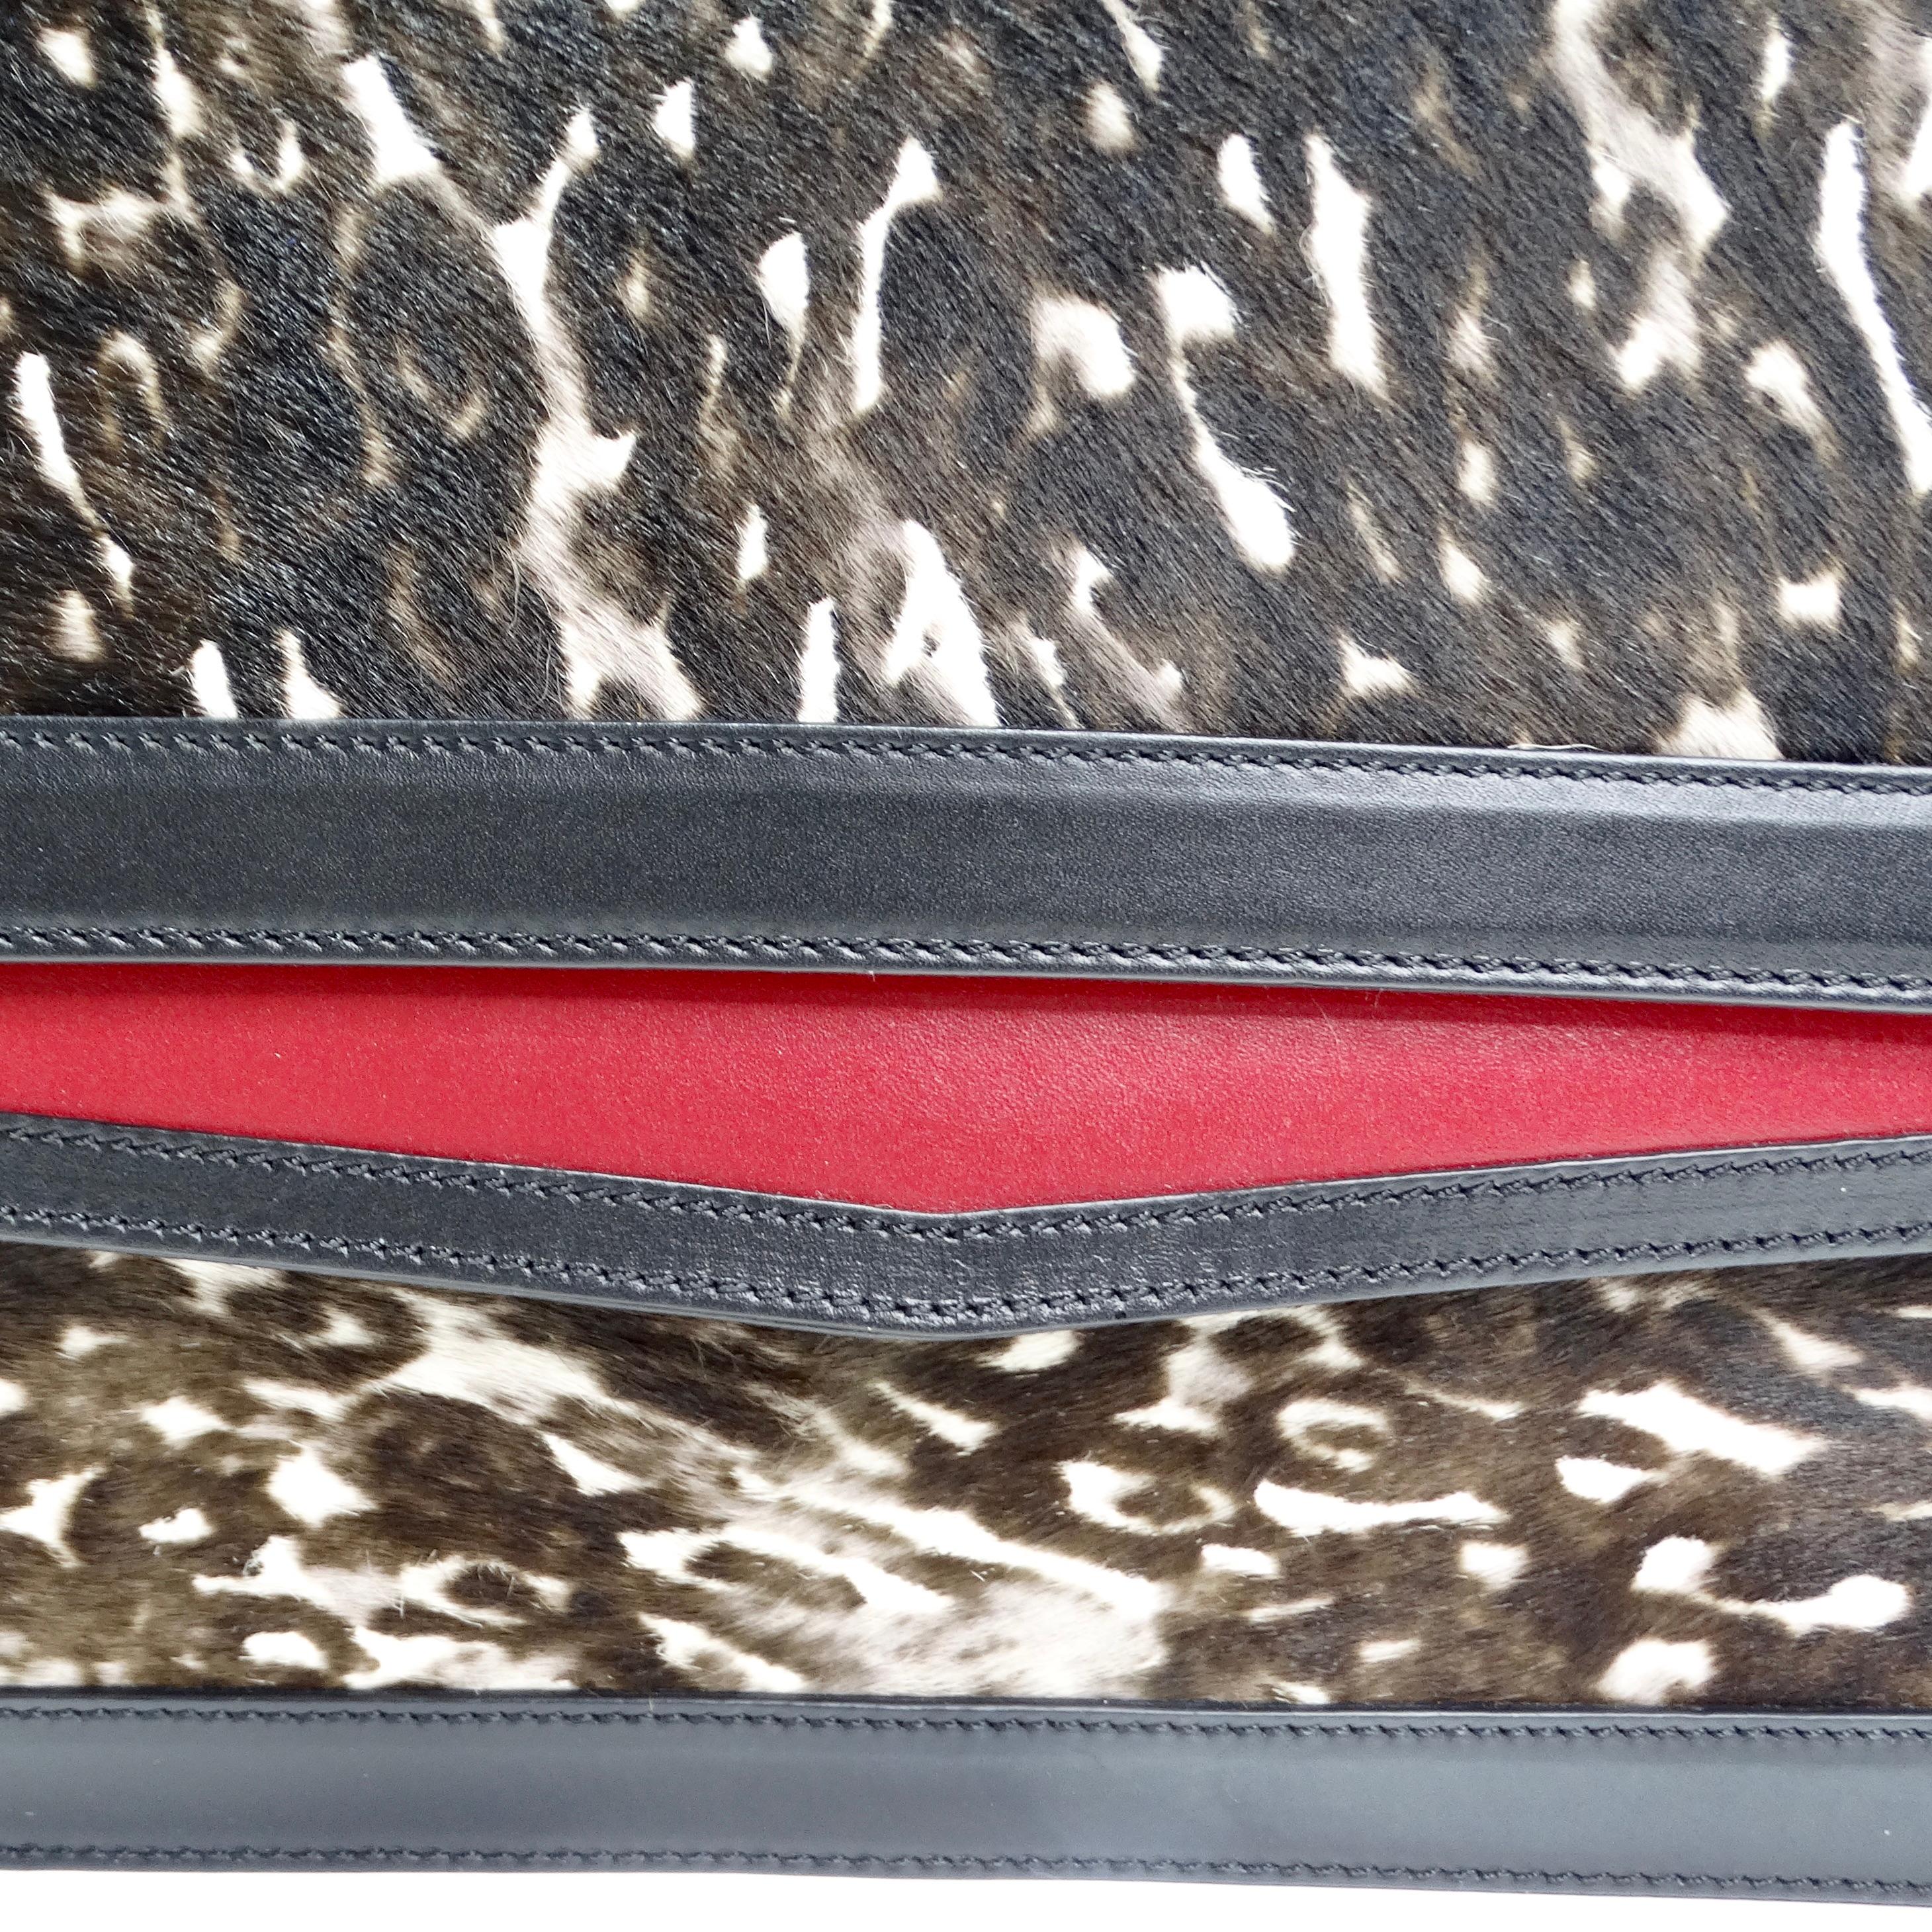 Voici le sac à rabat en poils de poney de Christian Louboutin, une pièce d'exception qui respire le luxe et la sophistication avec une touche de glamour avant-gardiste. Ce sac classique à rabat carré est fabriqué à partir de luxueux poils de poney